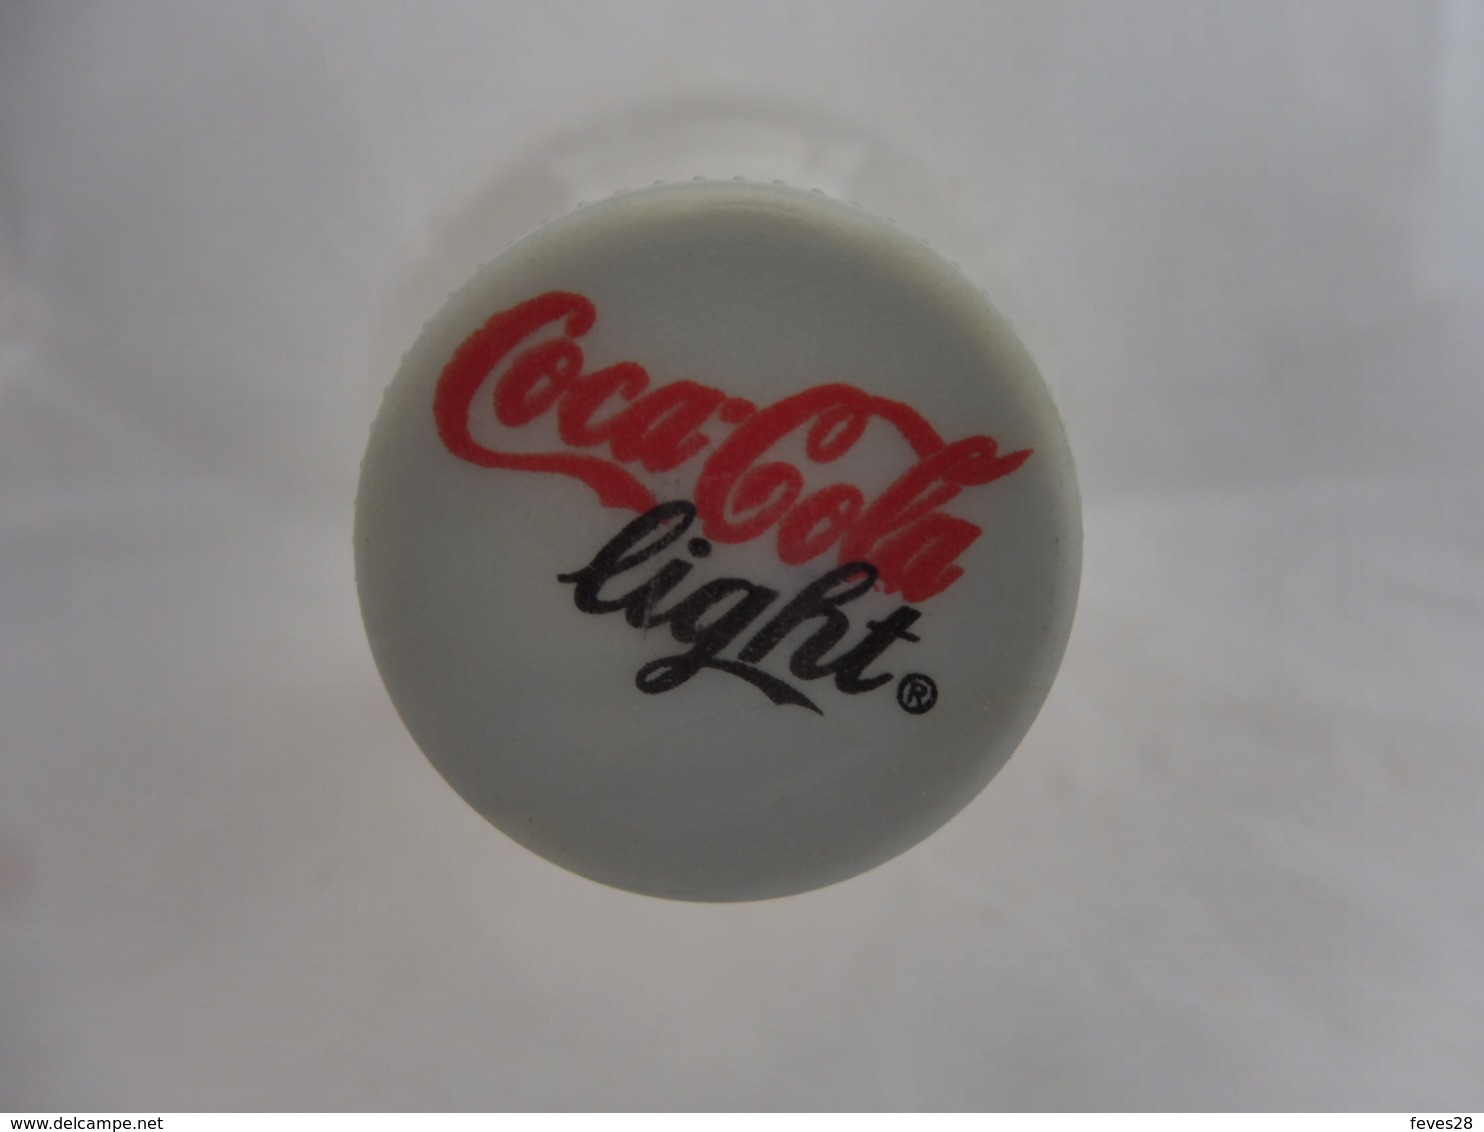 COCA COLA® LIGHT BOUTEILLE PLASTIQUE VIDE 2007 SUEDE 2L - Botellas